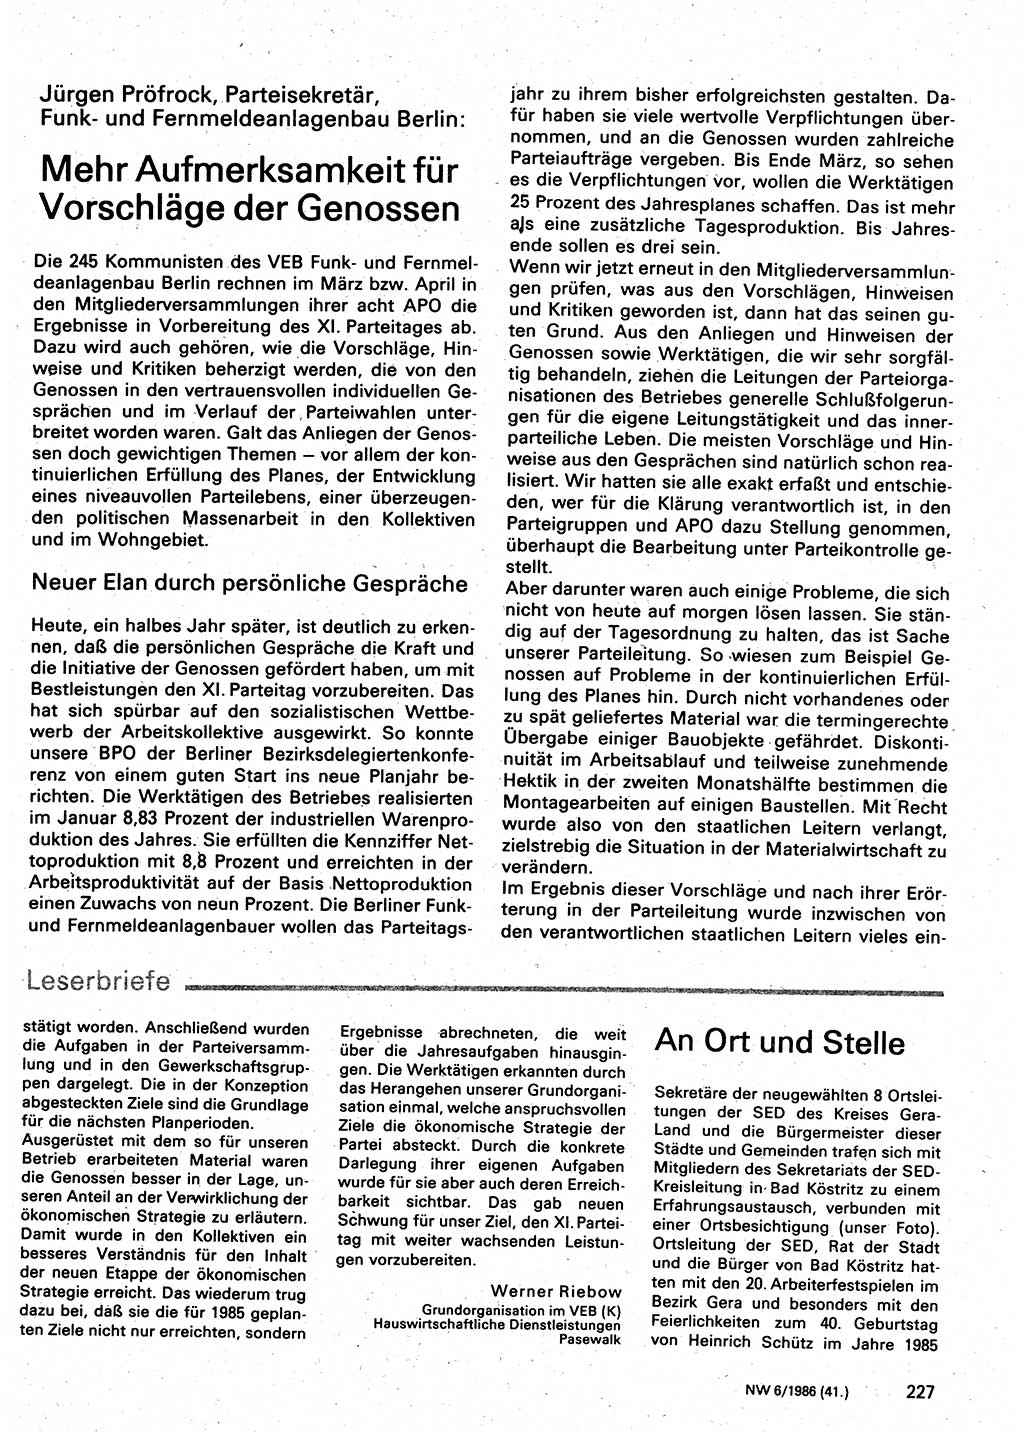 Neuer Weg (NW), Organ des Zentralkomitees (ZK) der SED (Sozialistische Einheitspartei Deutschlands) für Fragen des Parteilebens, 41. Jahrgang [Deutsche Demokratische Republik (DDR)] 1986, Seite 227 (NW ZK SED DDR 1986, S. 227)